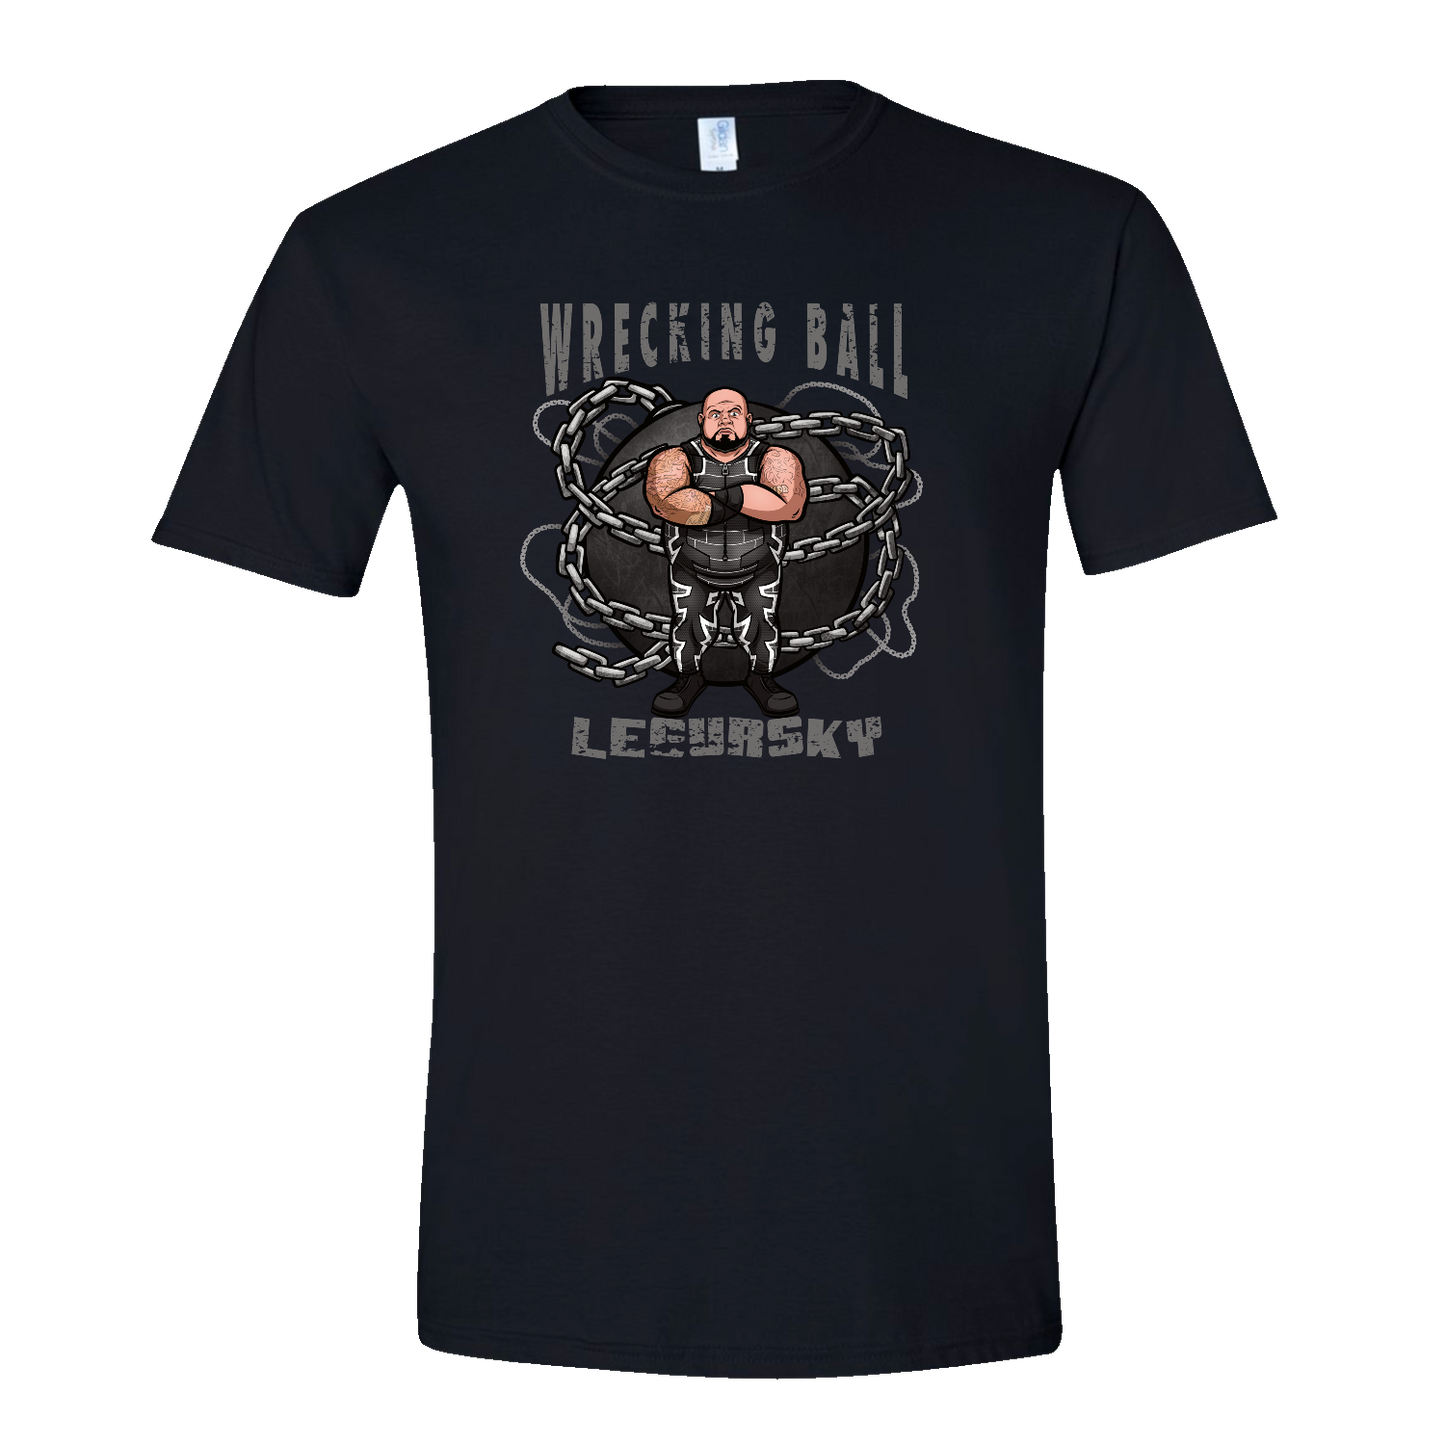 Ball & Chain (T-Shirt)